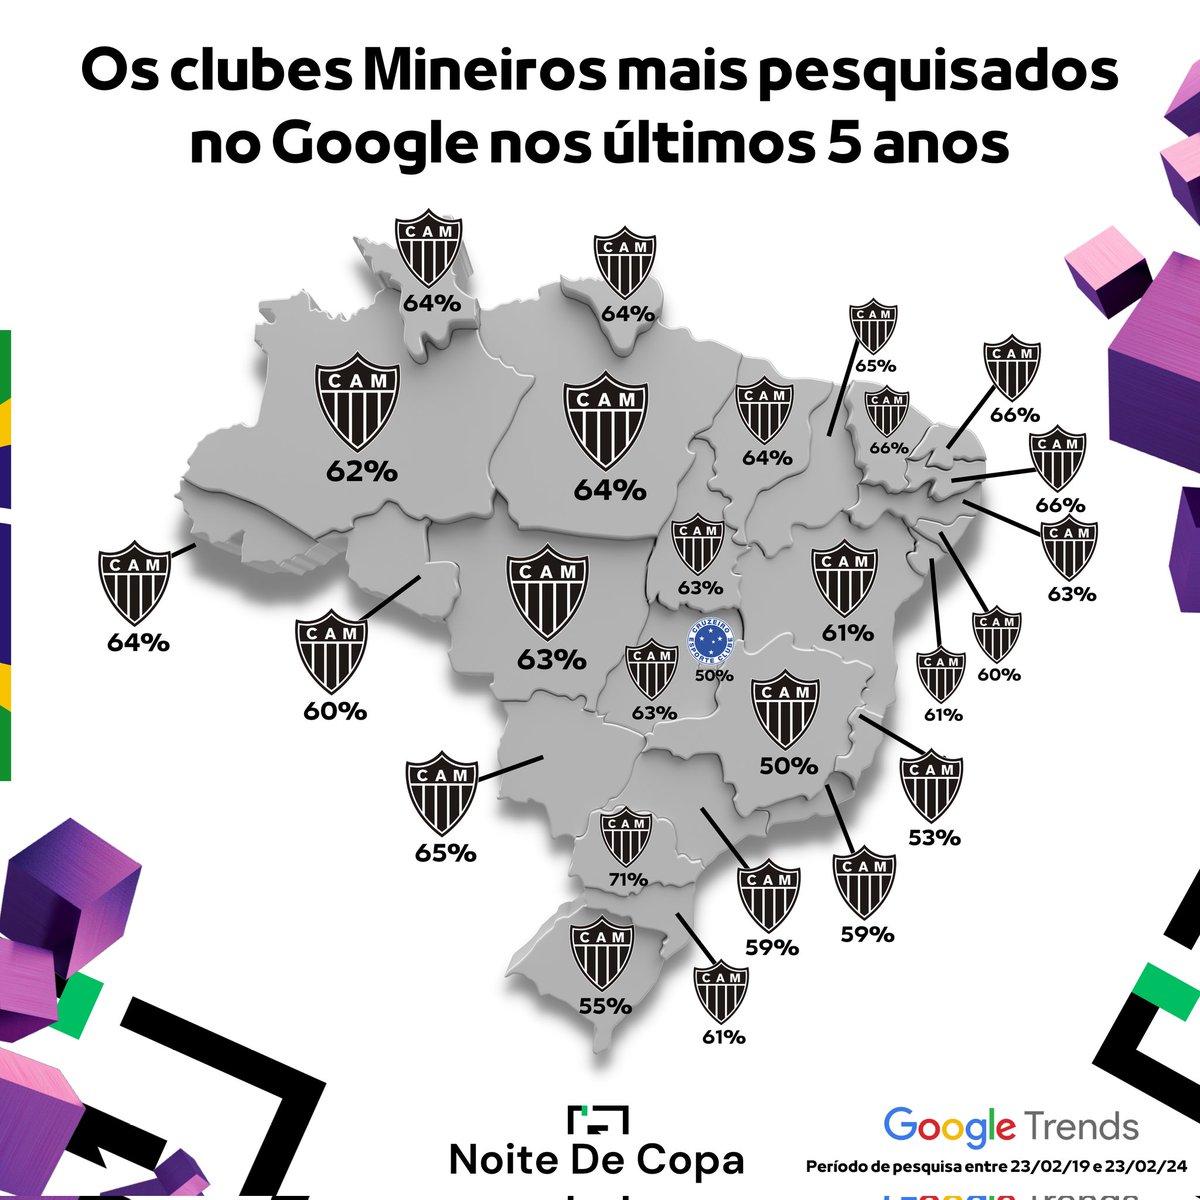 🇧🇷🔎 Os clubes MINEIROS mais PESQUISADOS no Google nos últimos 5 anos! O @Atletico liderou em 26 estados, o @Cruzeiro somente no DF. 📷 @Noitedecopa